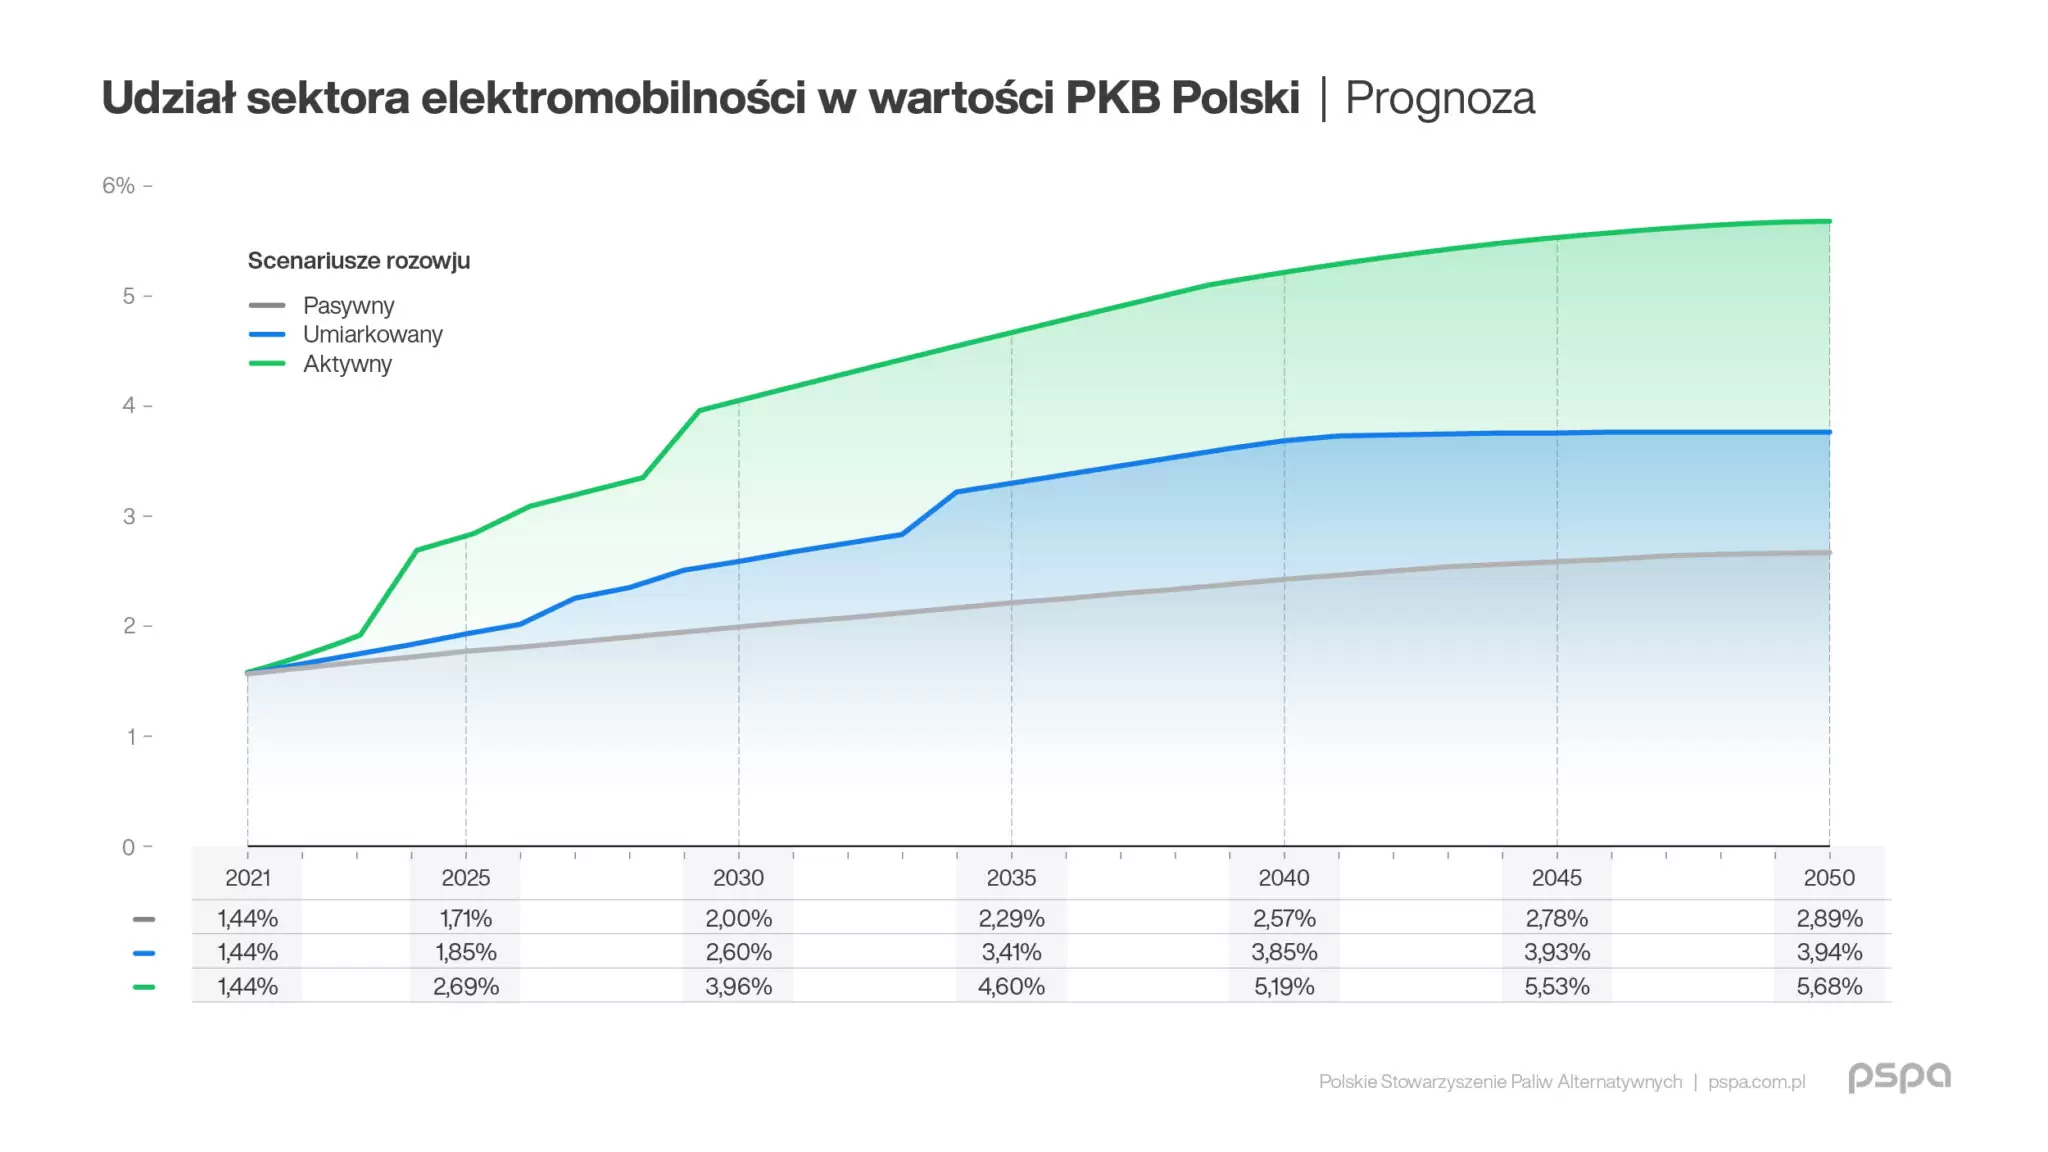 2 PSPA Wplyw elektromobilnosci na rozwoj gospodarczy Polski Raport grafika komunikat 04 2048x1152.jpg